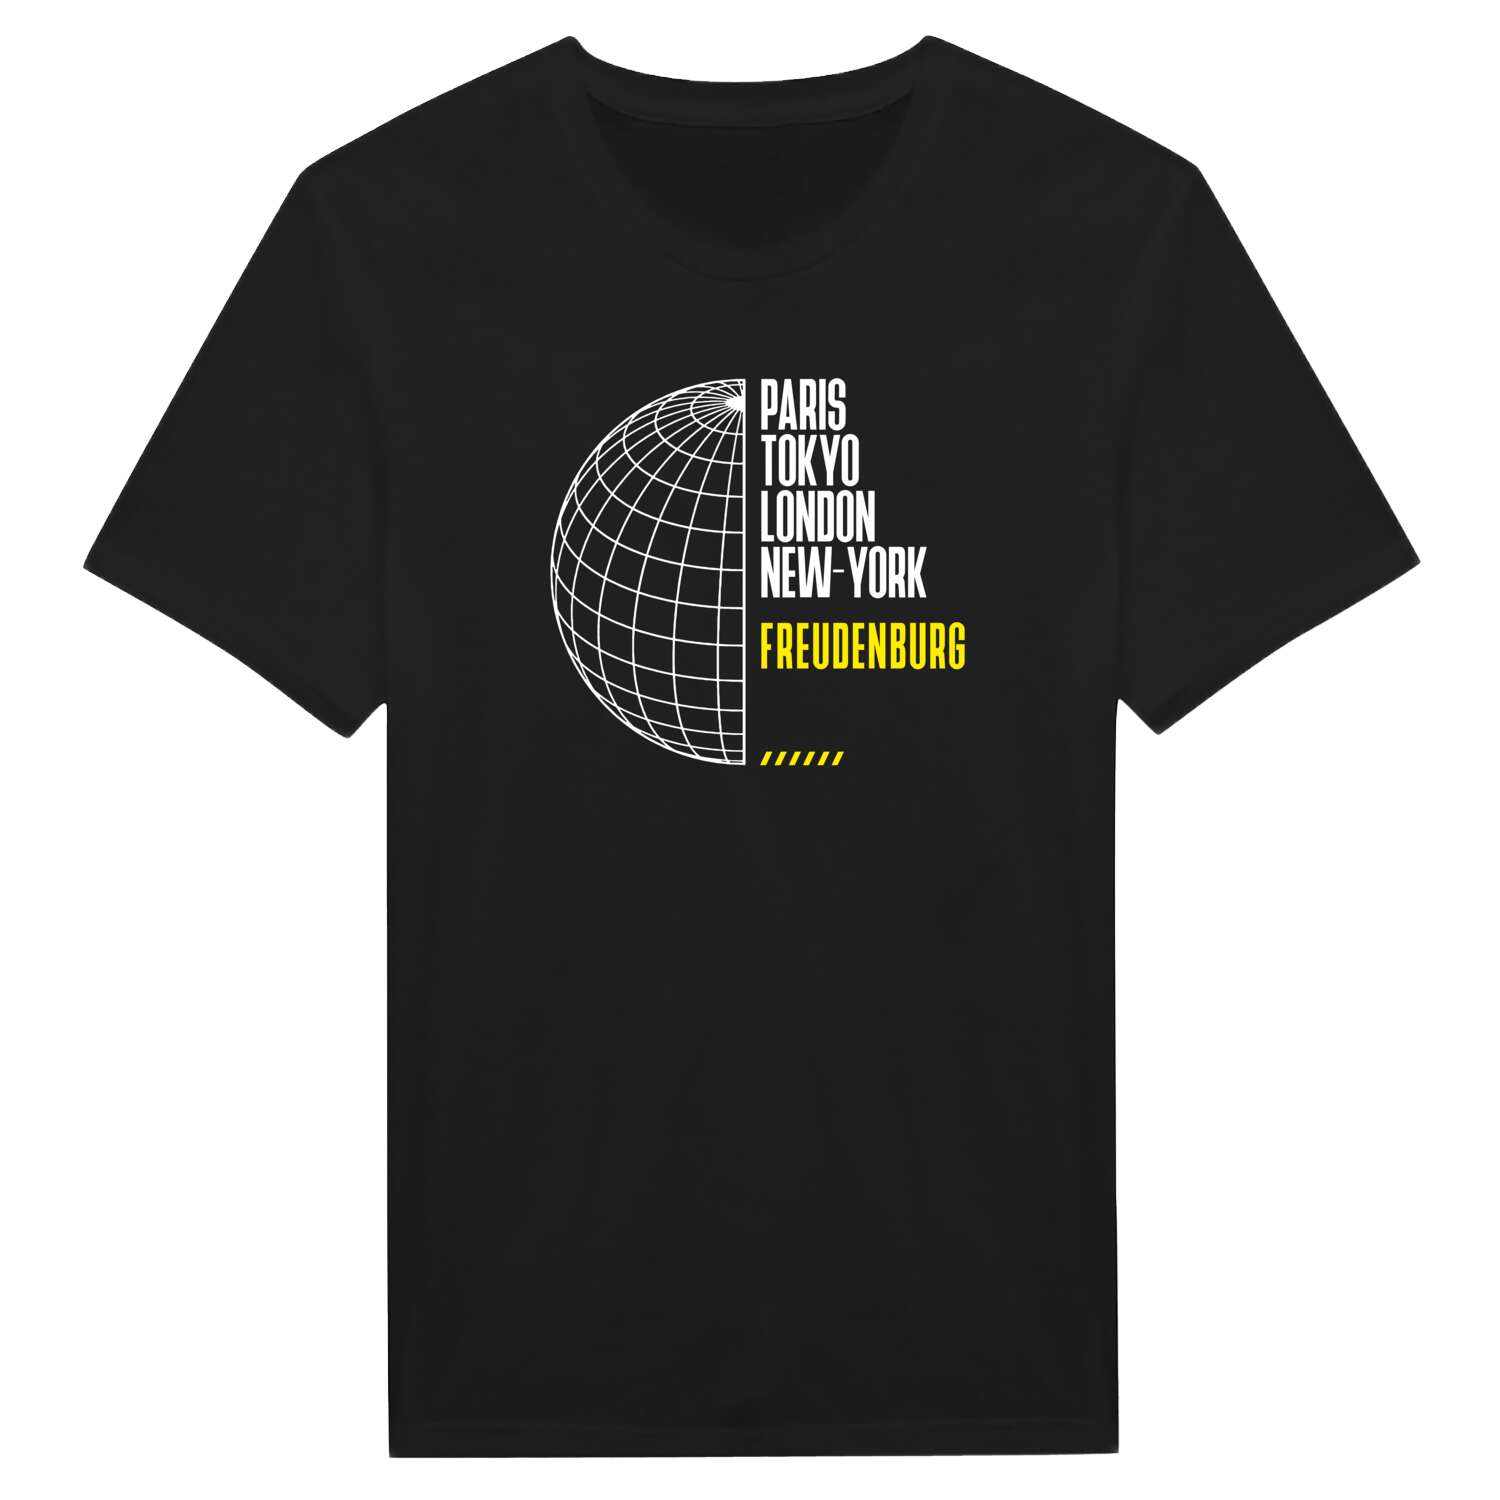 Freudenburg T-Shirt »Paris Tokyo London«